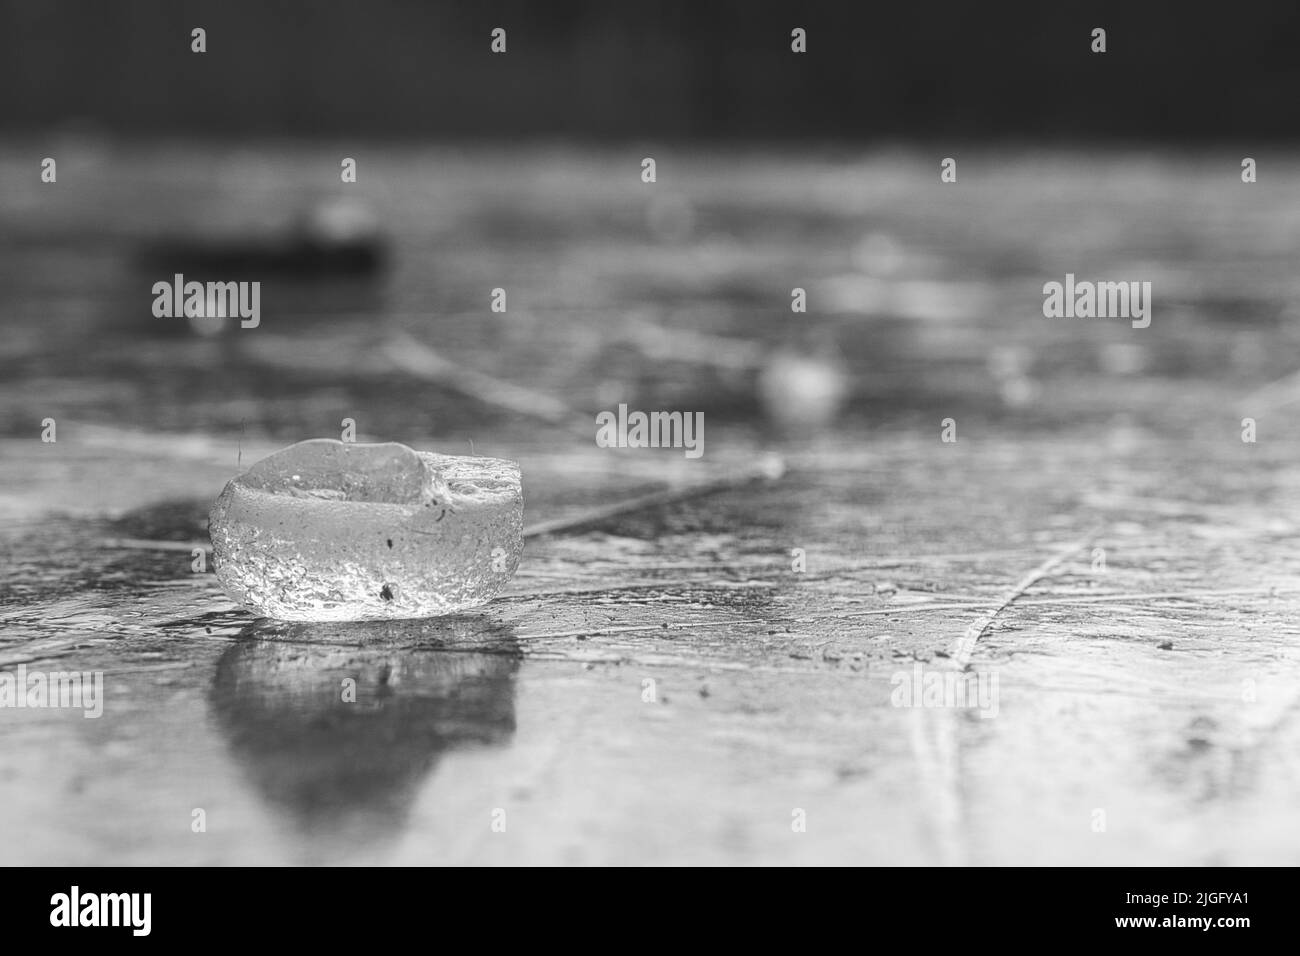 Gros plan d'un morceau de glace sur une surface gelée Banque D'Images